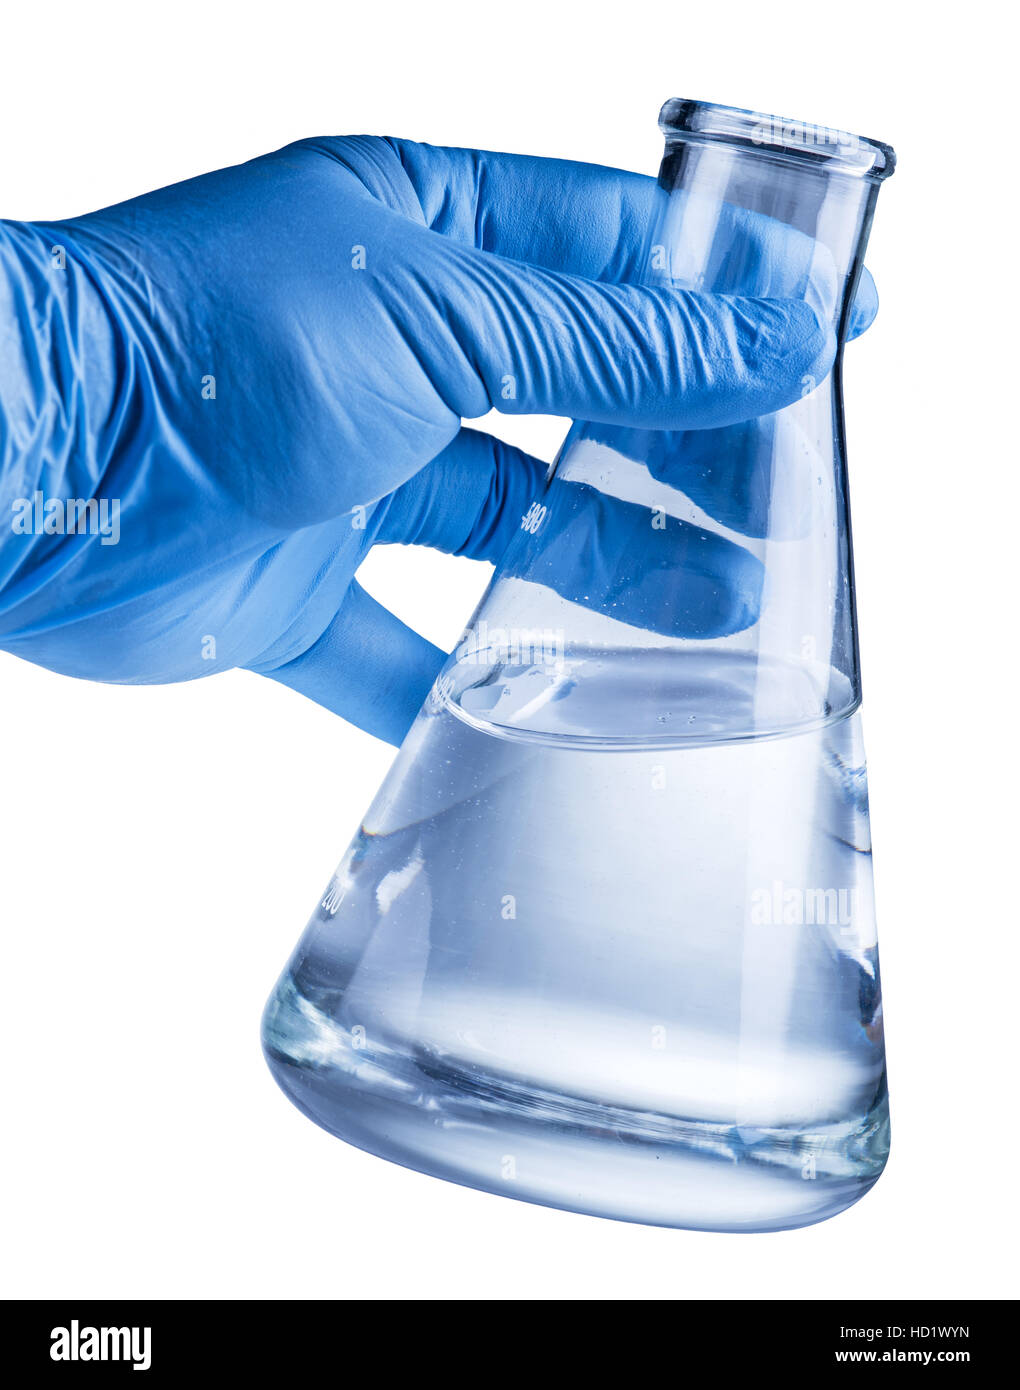 Labor-Becher in der Hand des Analytikers in Kunststoff-Handschuh. Datei enthält Beschneidungspfade. Stockfoto